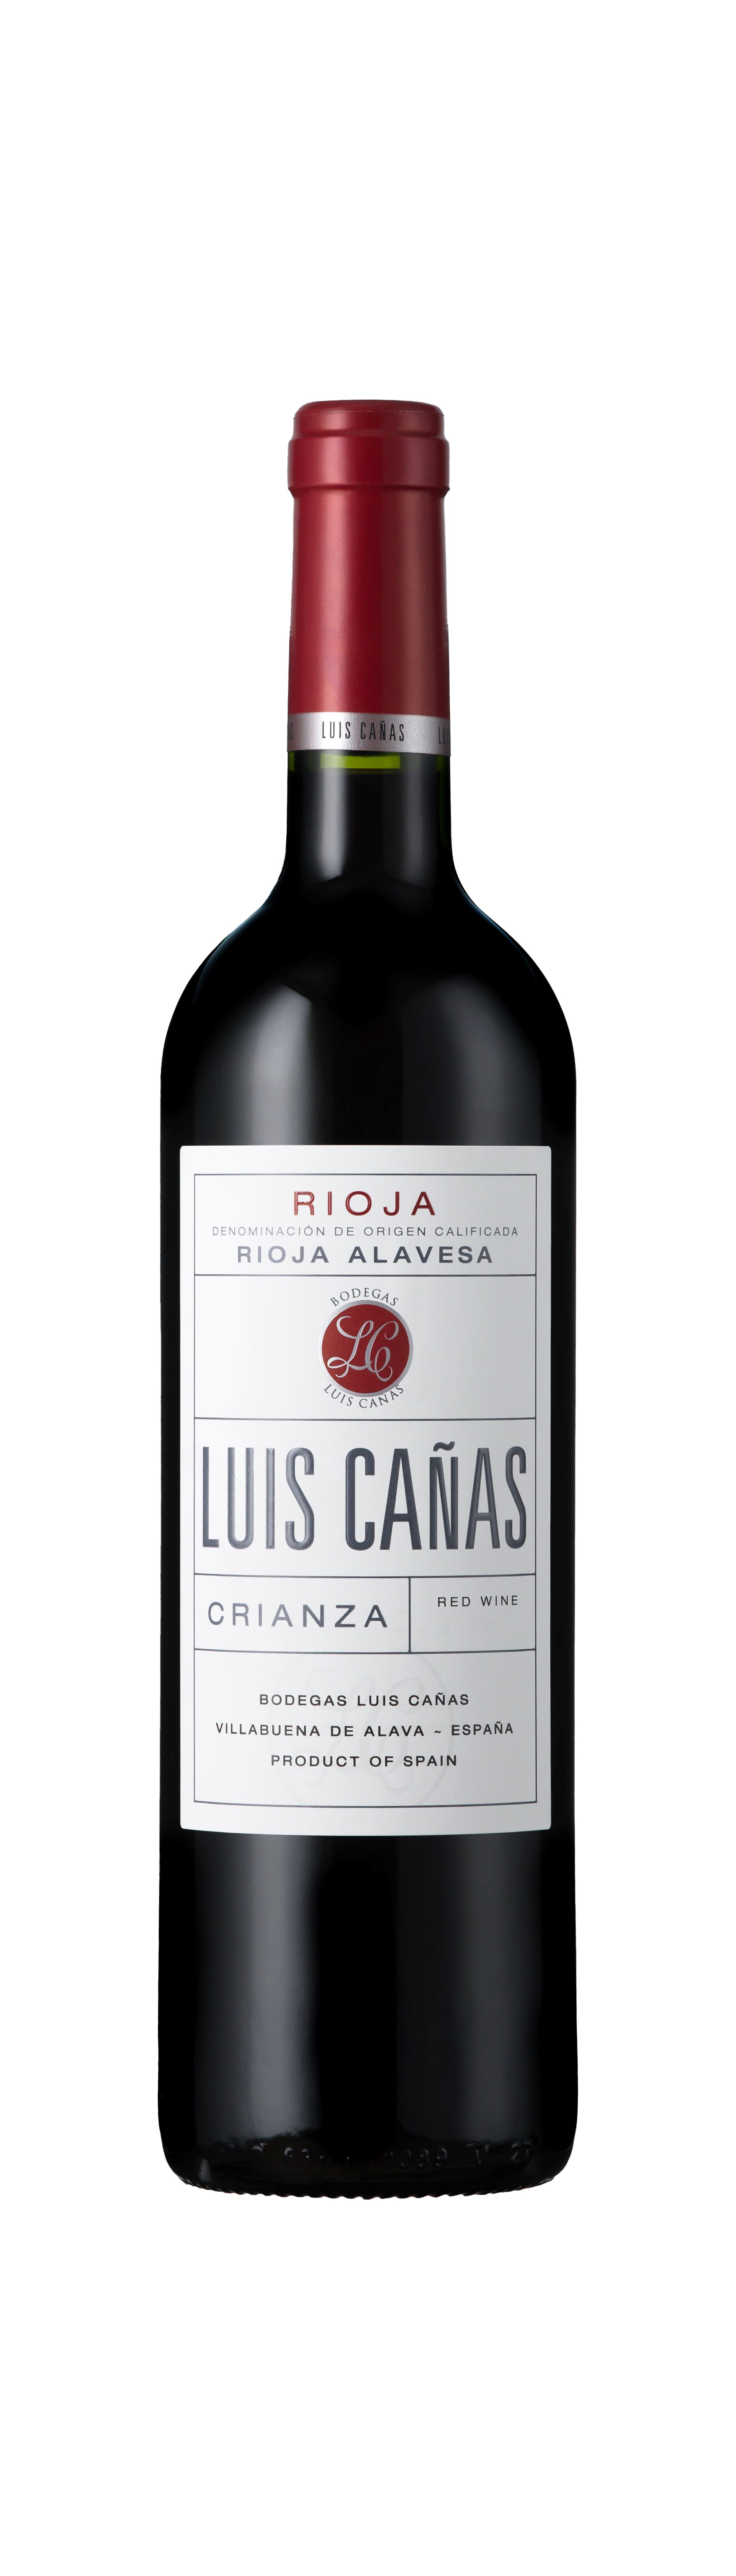 Luis Canas, Rioja Crianza, DOCa Rioja, Spain, 2019 Wine Bottle Alliance Wines 